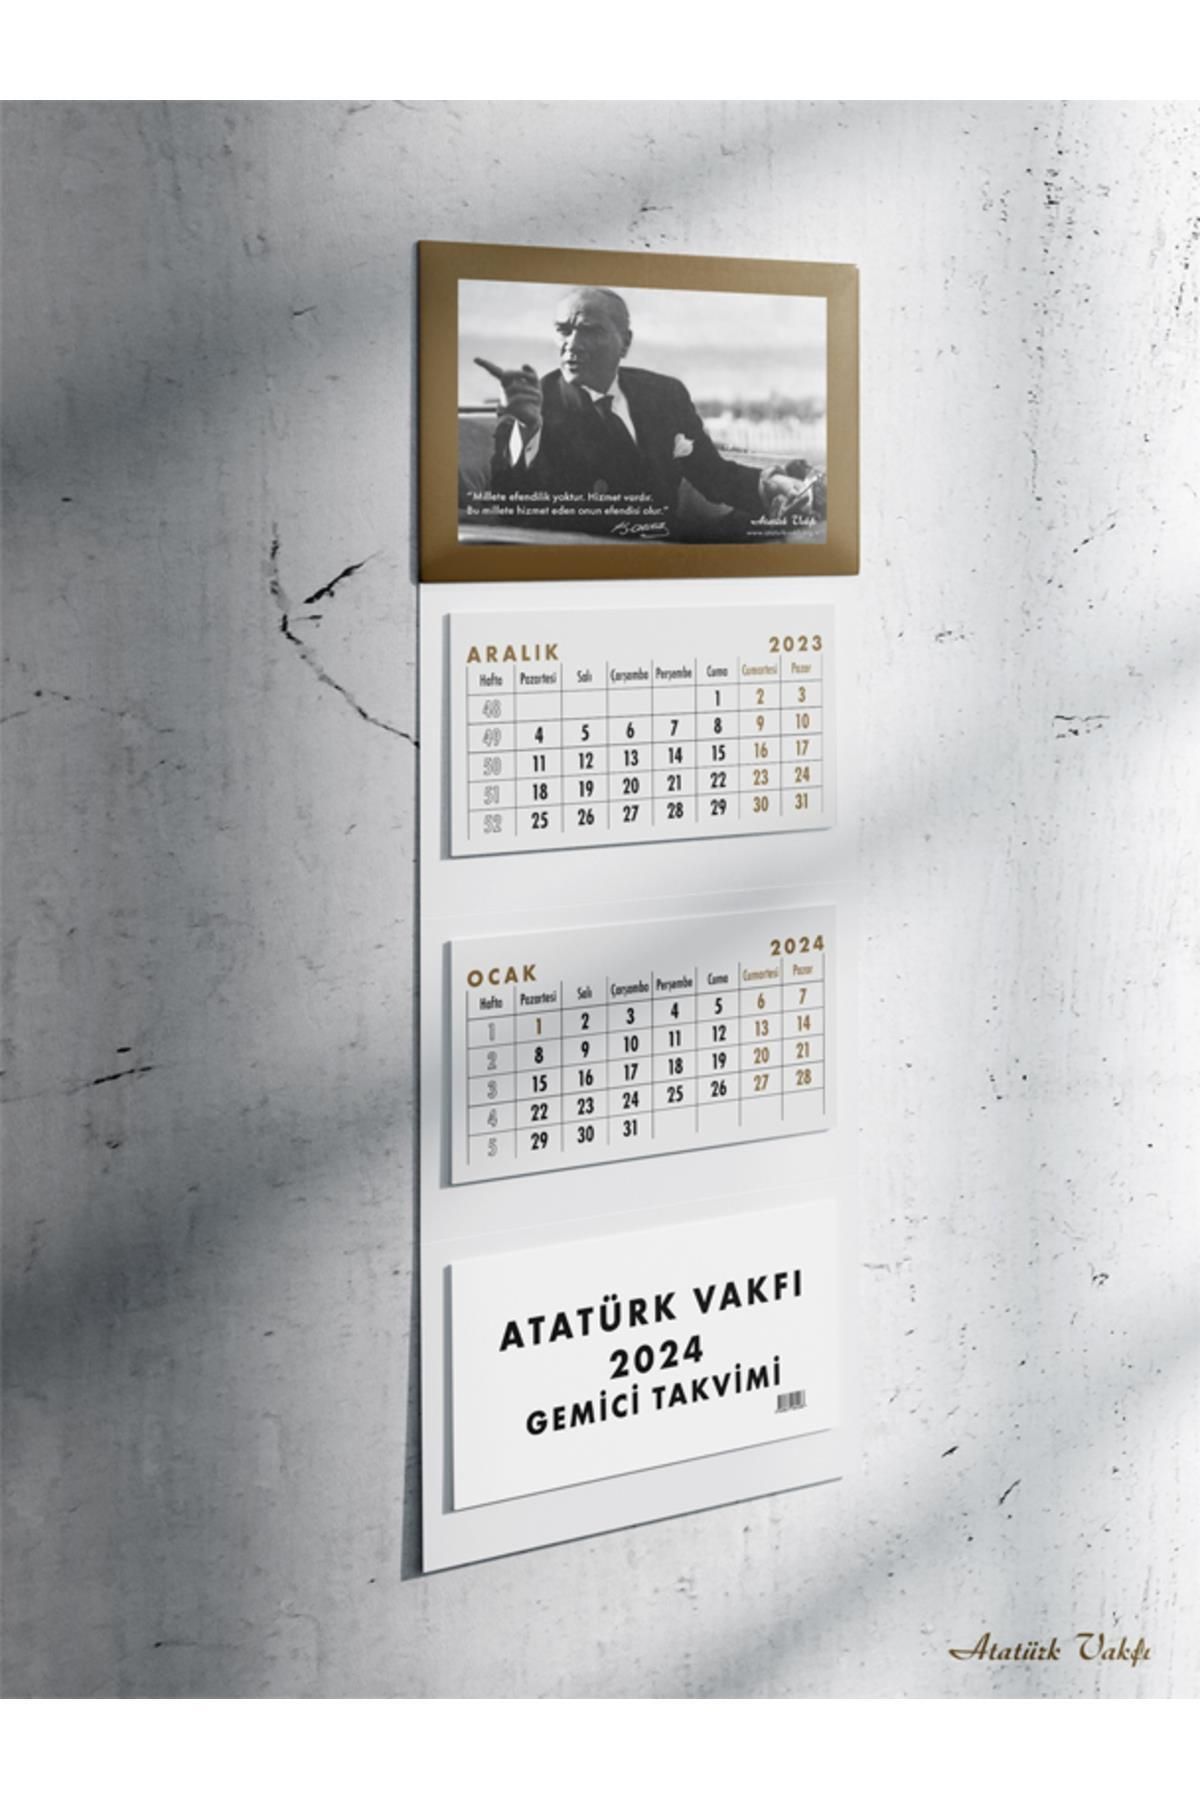 Atatürk Vakfı Yayınevi Atatürk Vakfı Gemici Takvimi